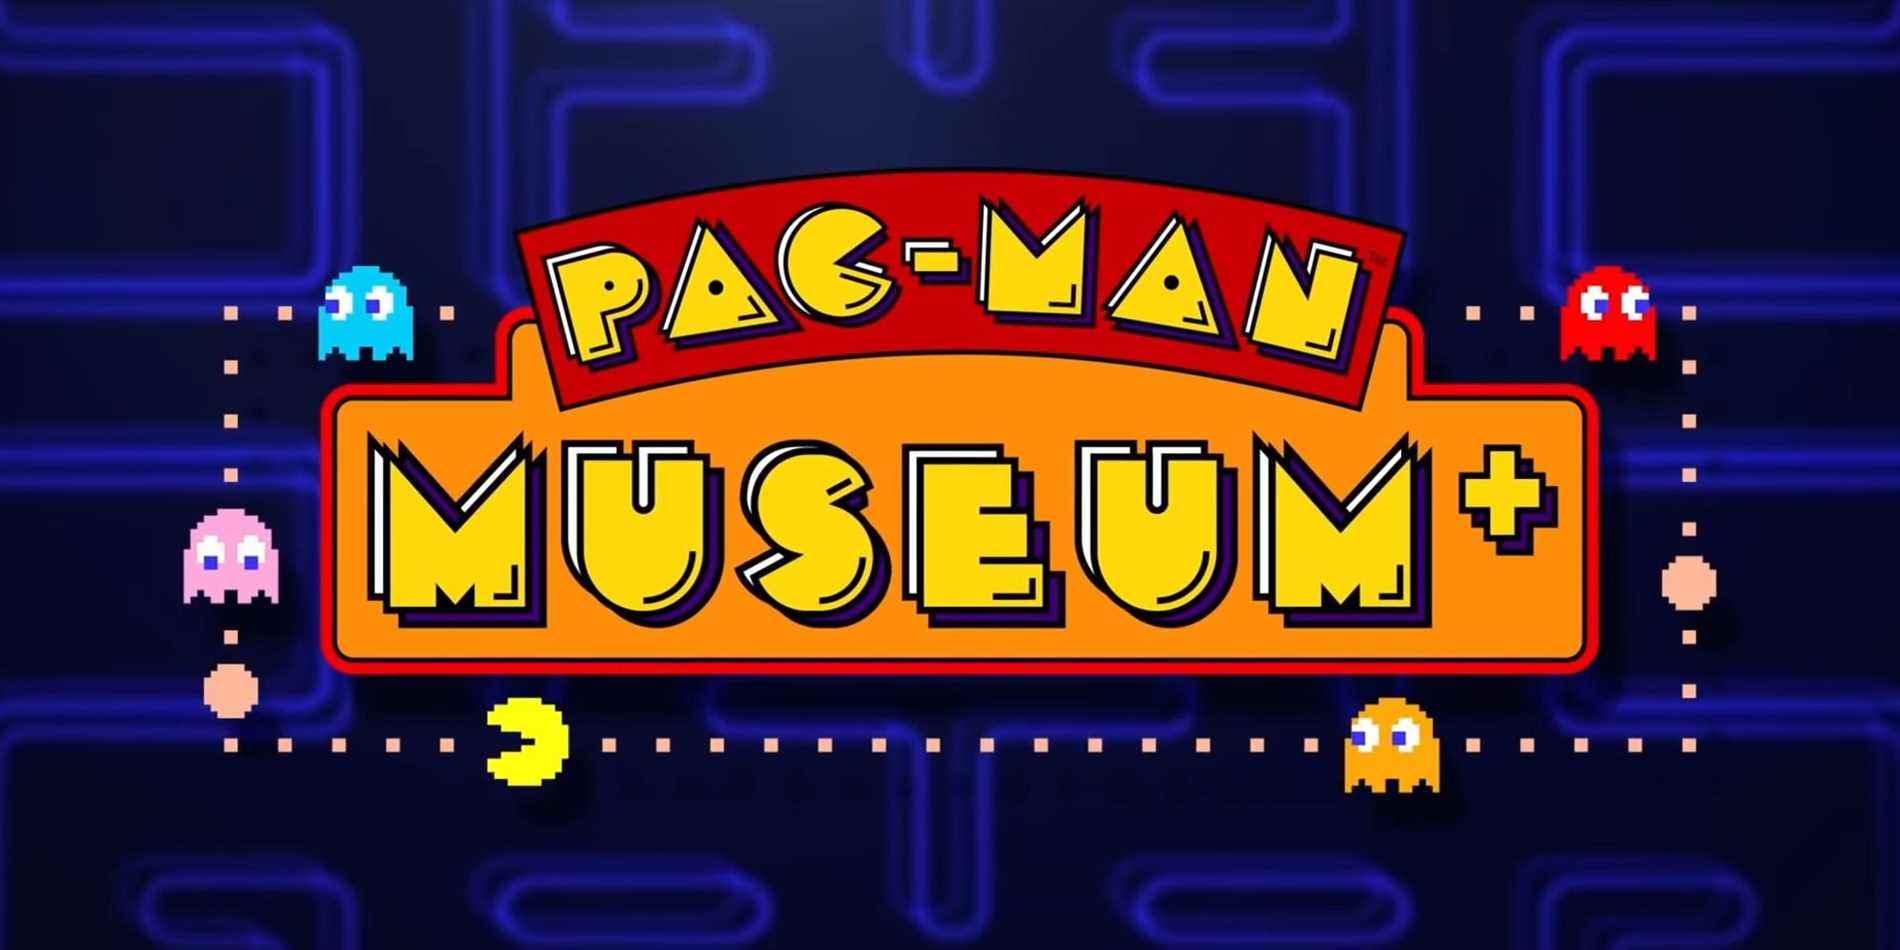 pac-man-museum-plus-bande-annonce-date-de-sortie